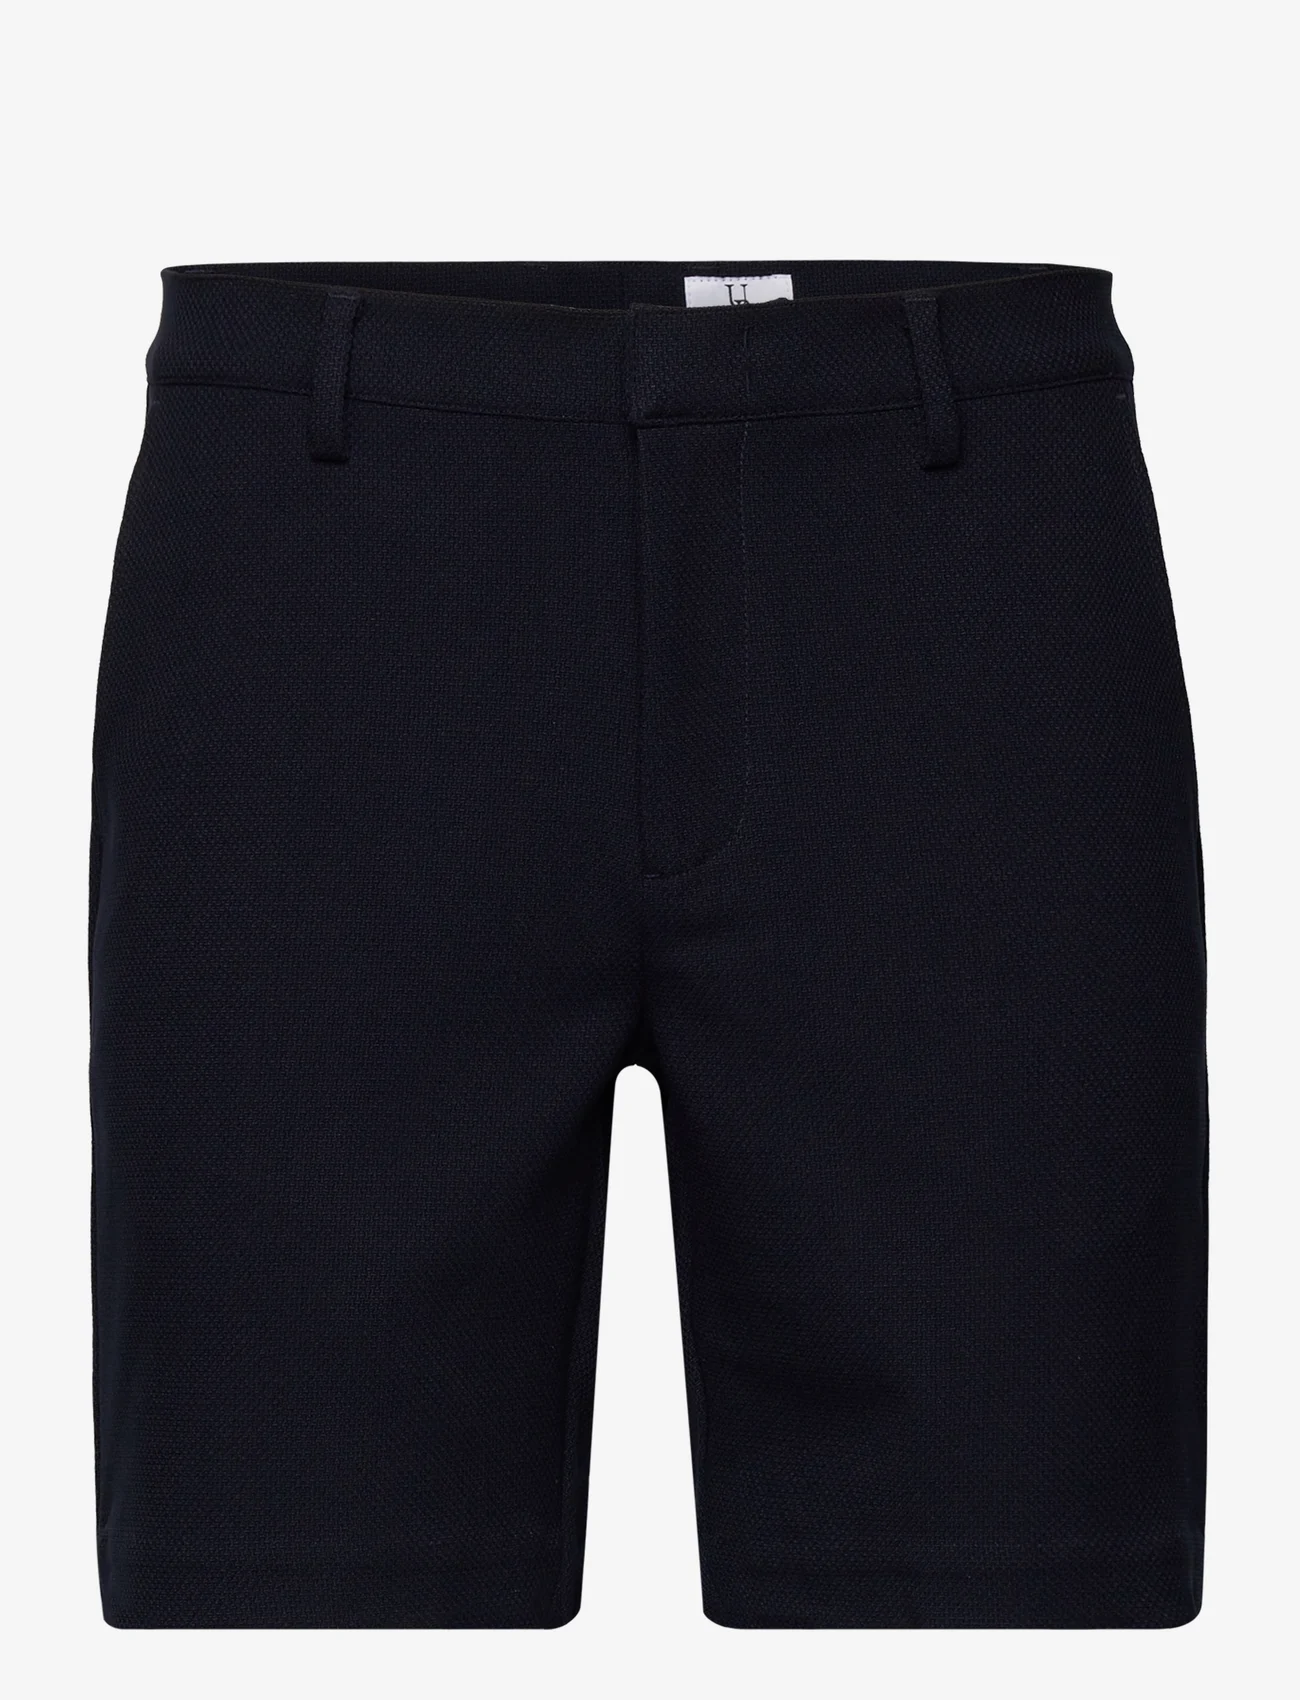 Urban Pioneers Bate Shorts – shorts – shop at Booztlet